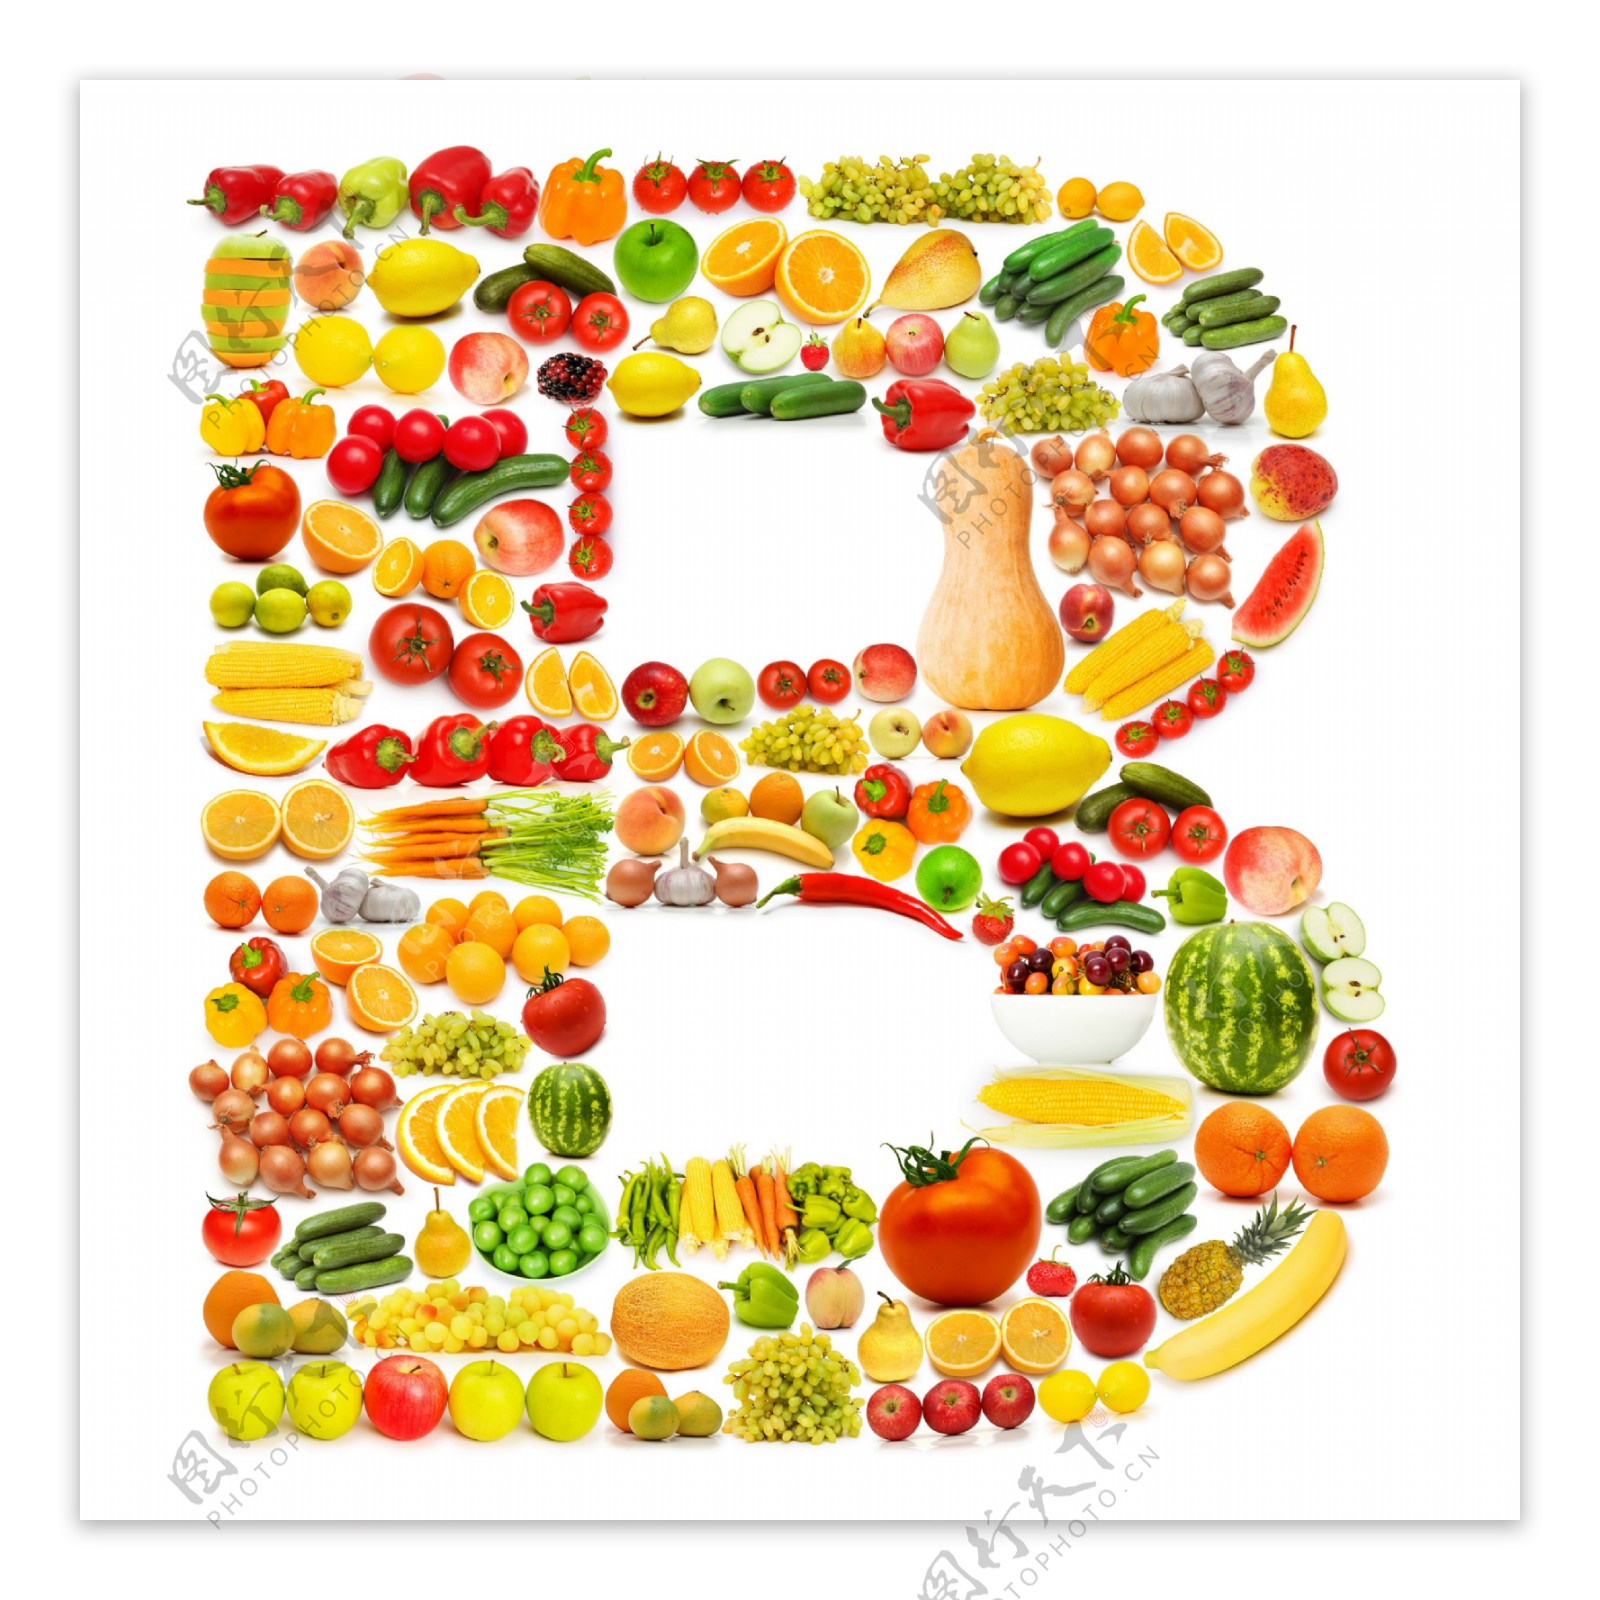 蔬菜水果组成的字母B图片